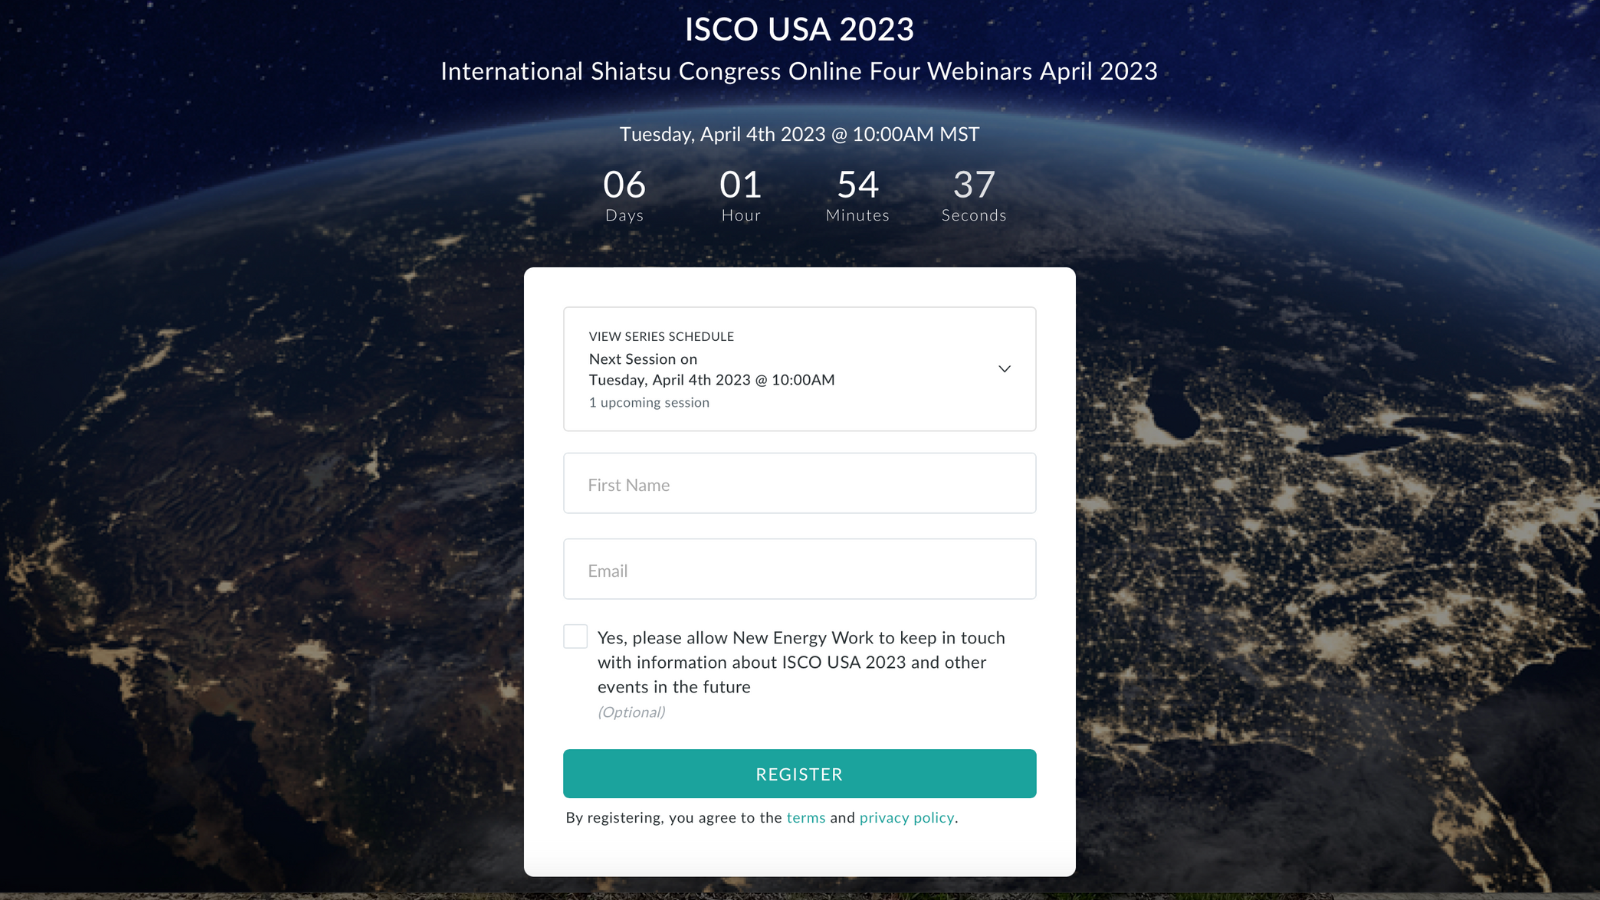 ISCO USA 2023